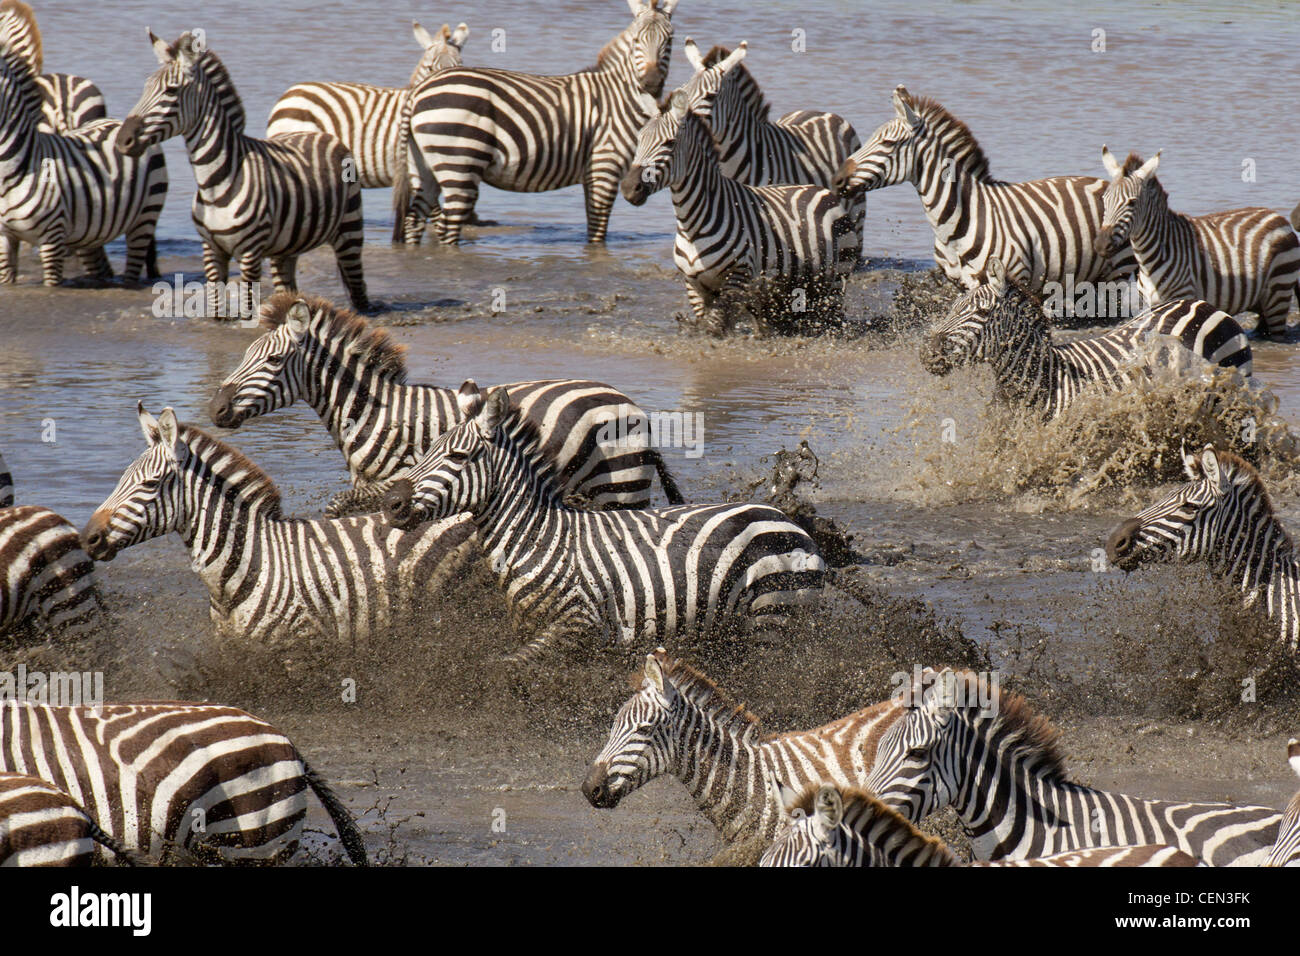 Zebra herd drinking in Tanzania's Serengeti region Stock Photo